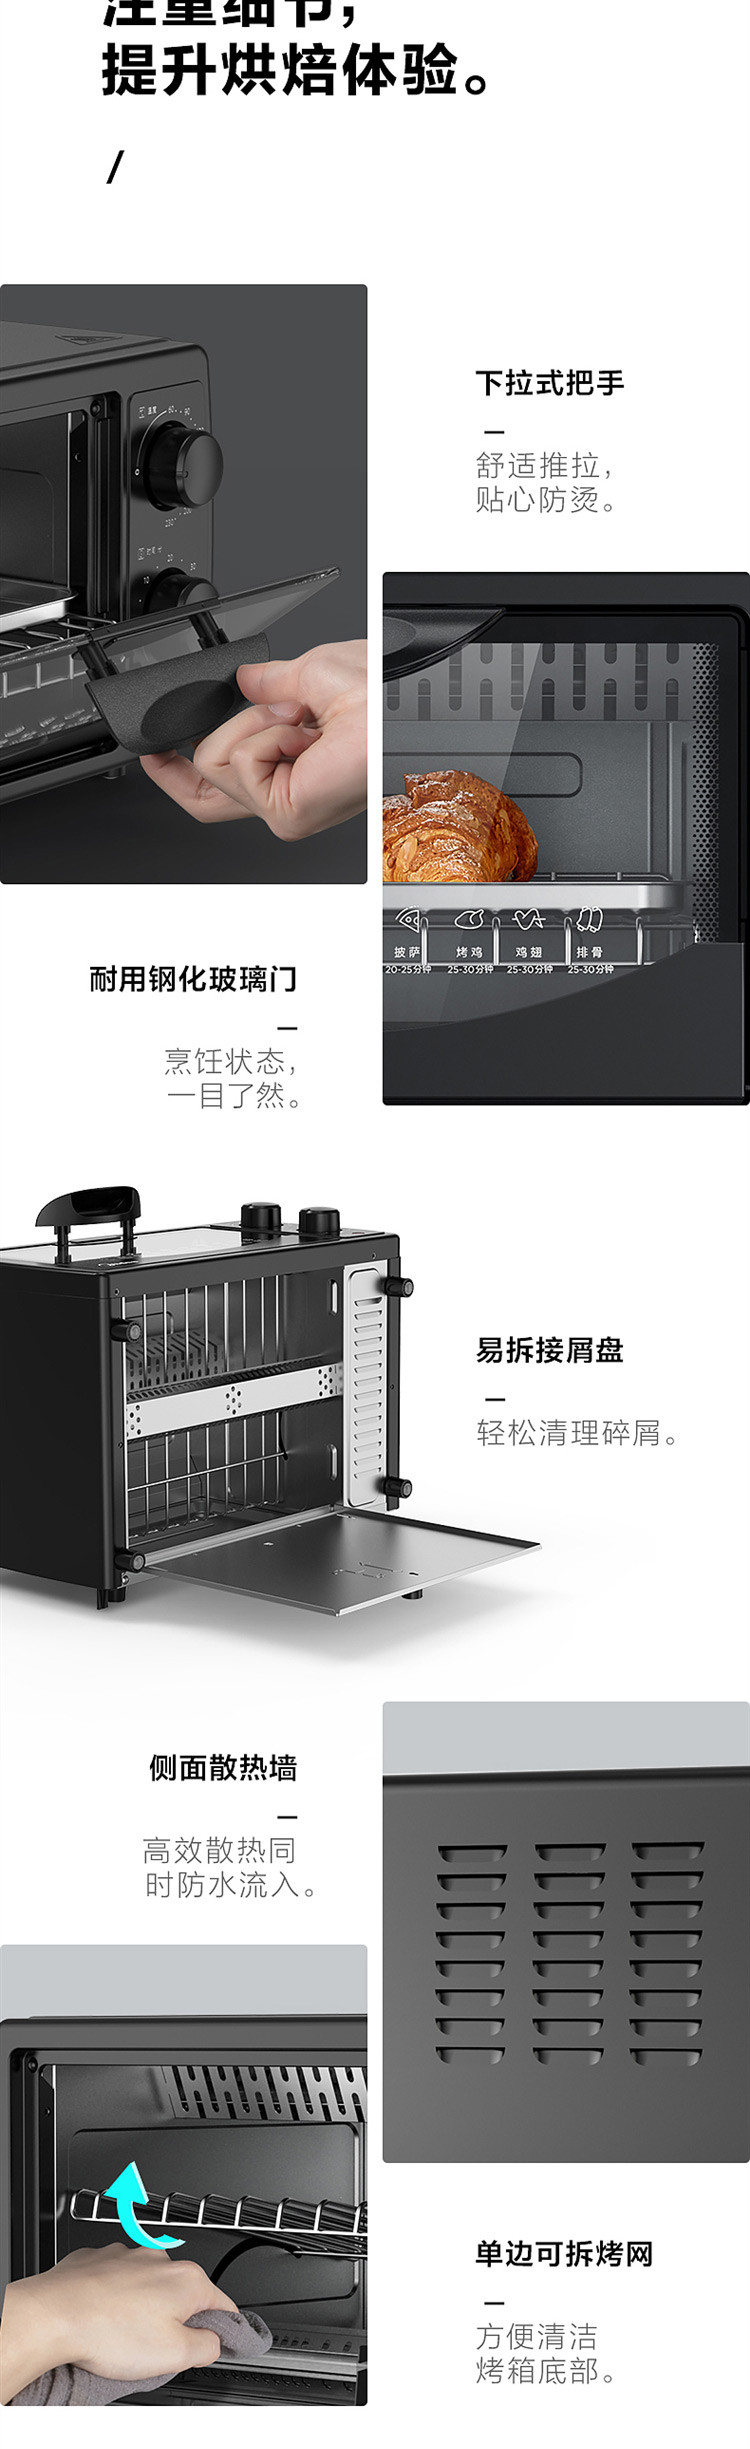 【邮乐自营】美的/MIDEA 电烤箱10升家用迷你多功能烘焙蛋糕小烤箱PT1011新款黑色